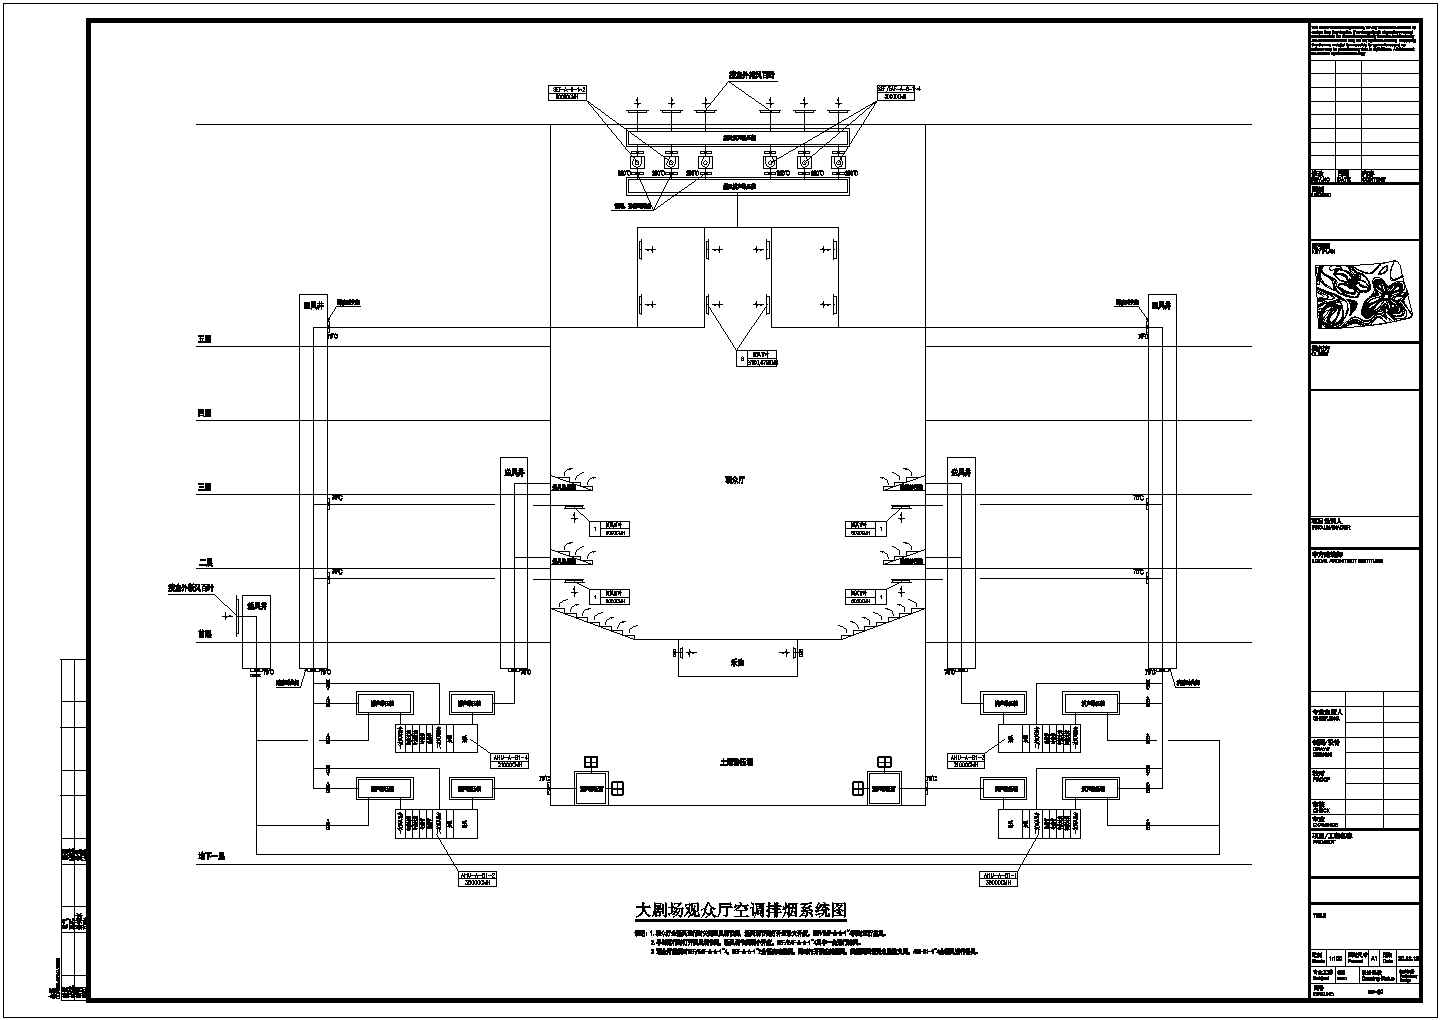 【湖南】国际文化艺术中心空调通风防排烟系统设计施工图